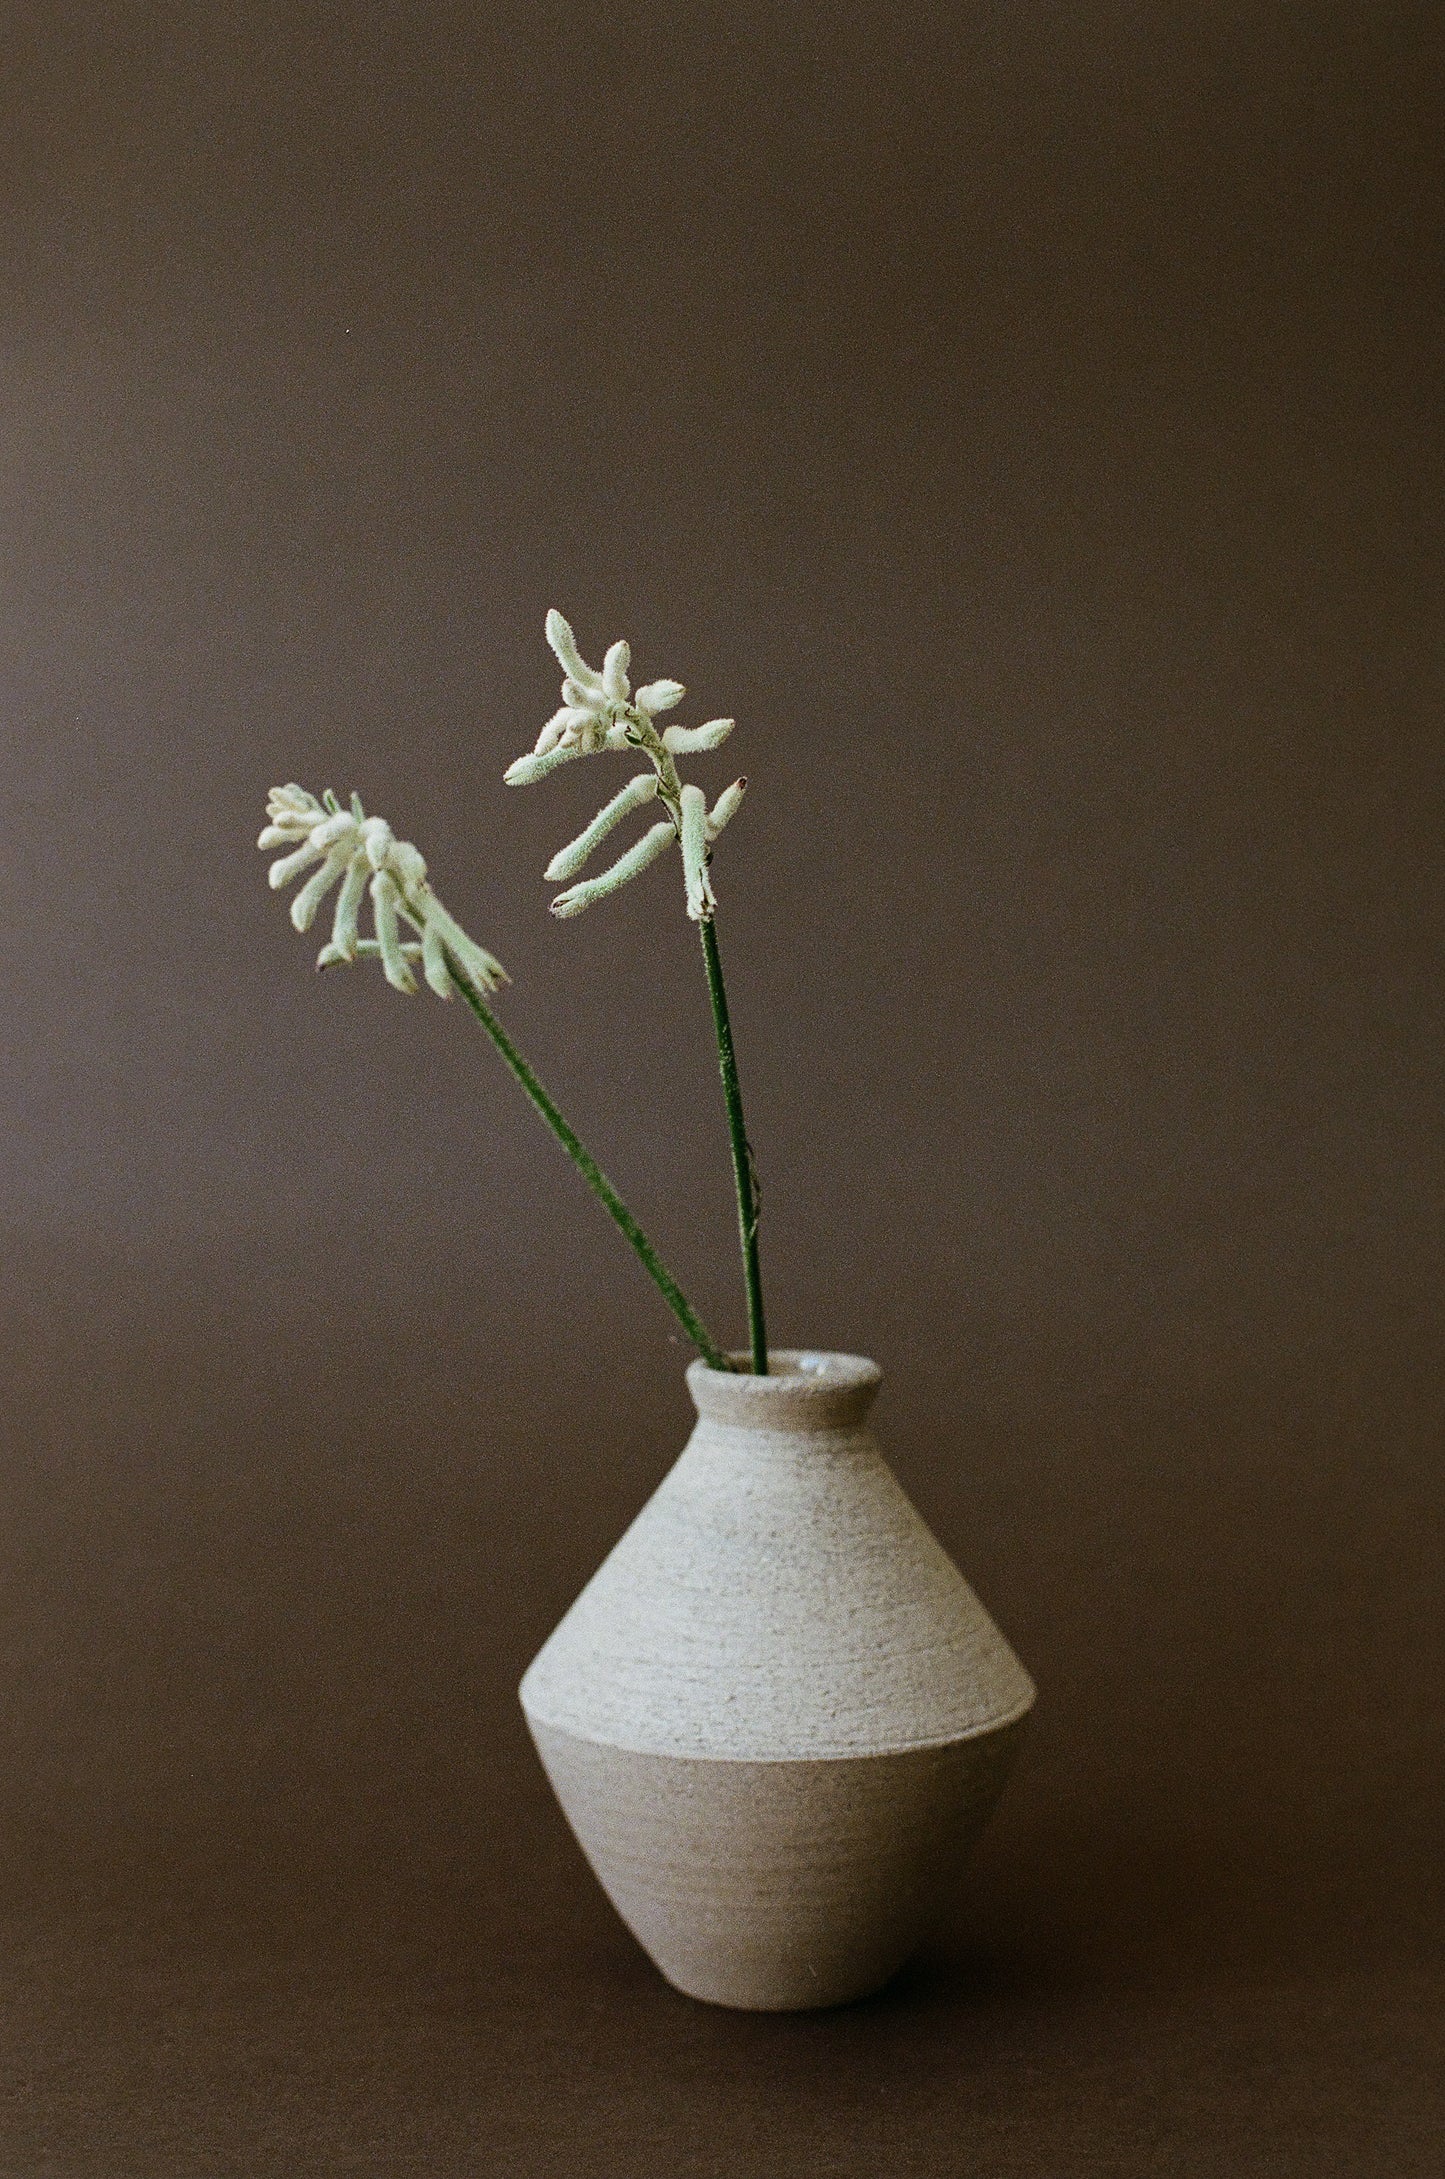 Angular Ceramic Vase, Beige